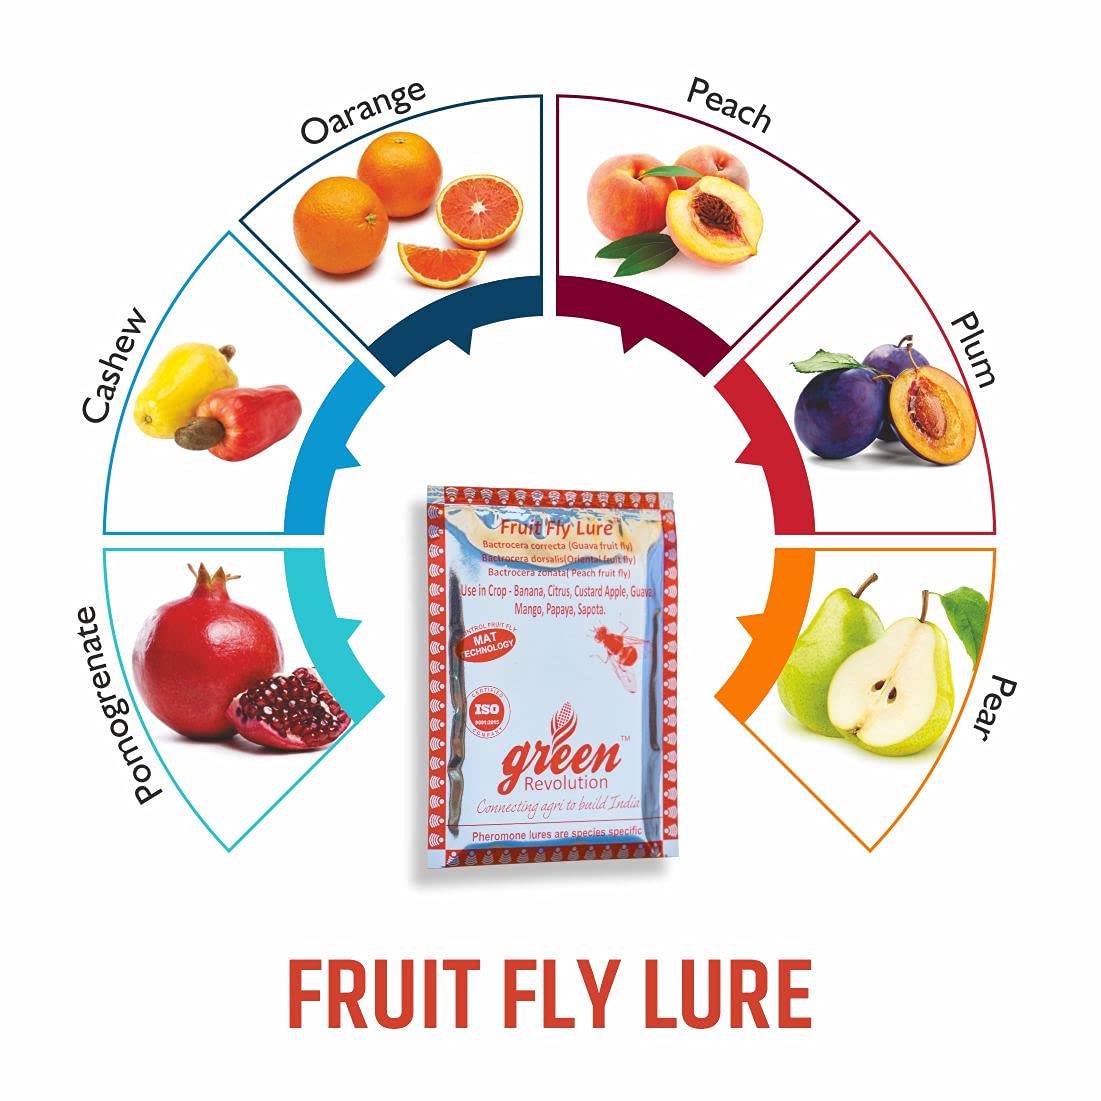 Green Revolution Fruit Fly Lure